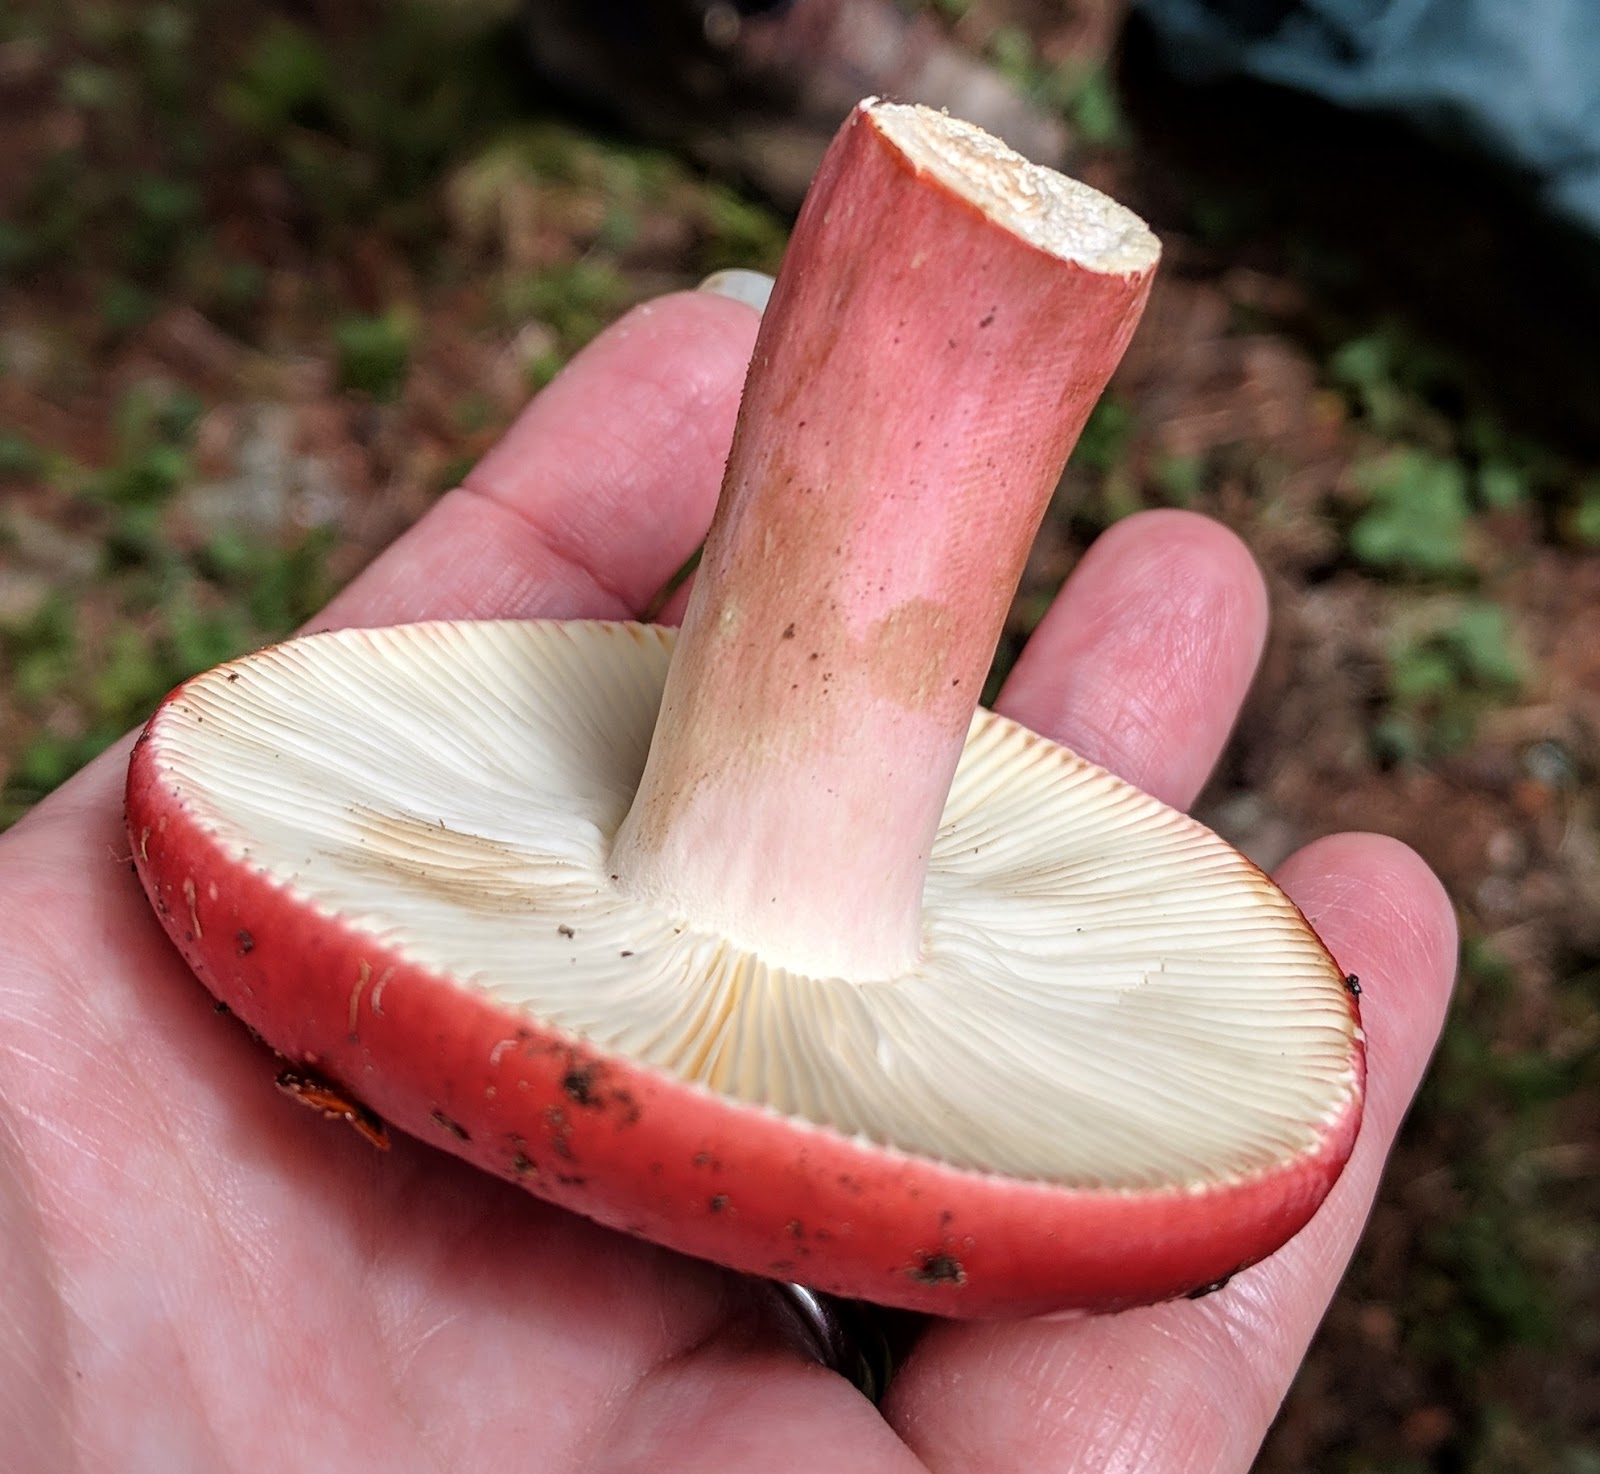 White balls in the Wood! – Common Puffball – The Mushroom Diary – UK Wild  Mushroom Hunting Blog